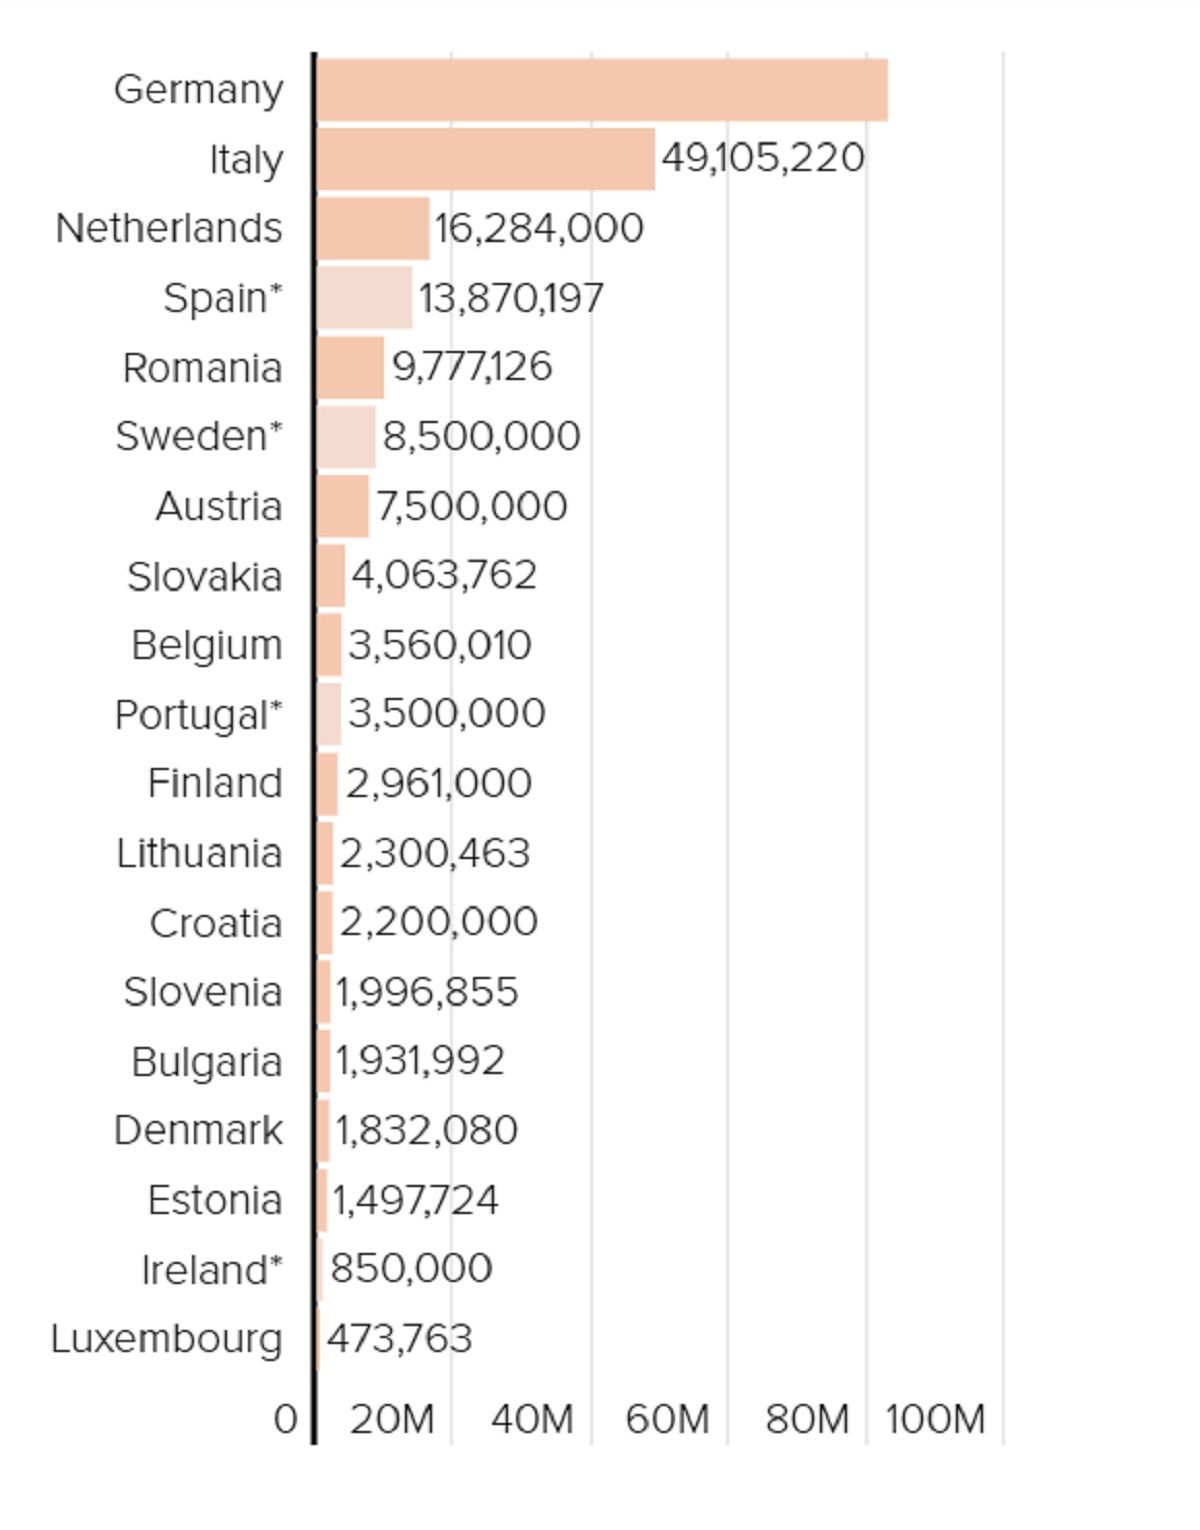 Numărul de vaccinuri irosite tinde să corespundă mărimii țărilor, Germania reprezentând 83 de milioane de doze aruncate, iar Luxemburg puțin sub jumătate de milion.